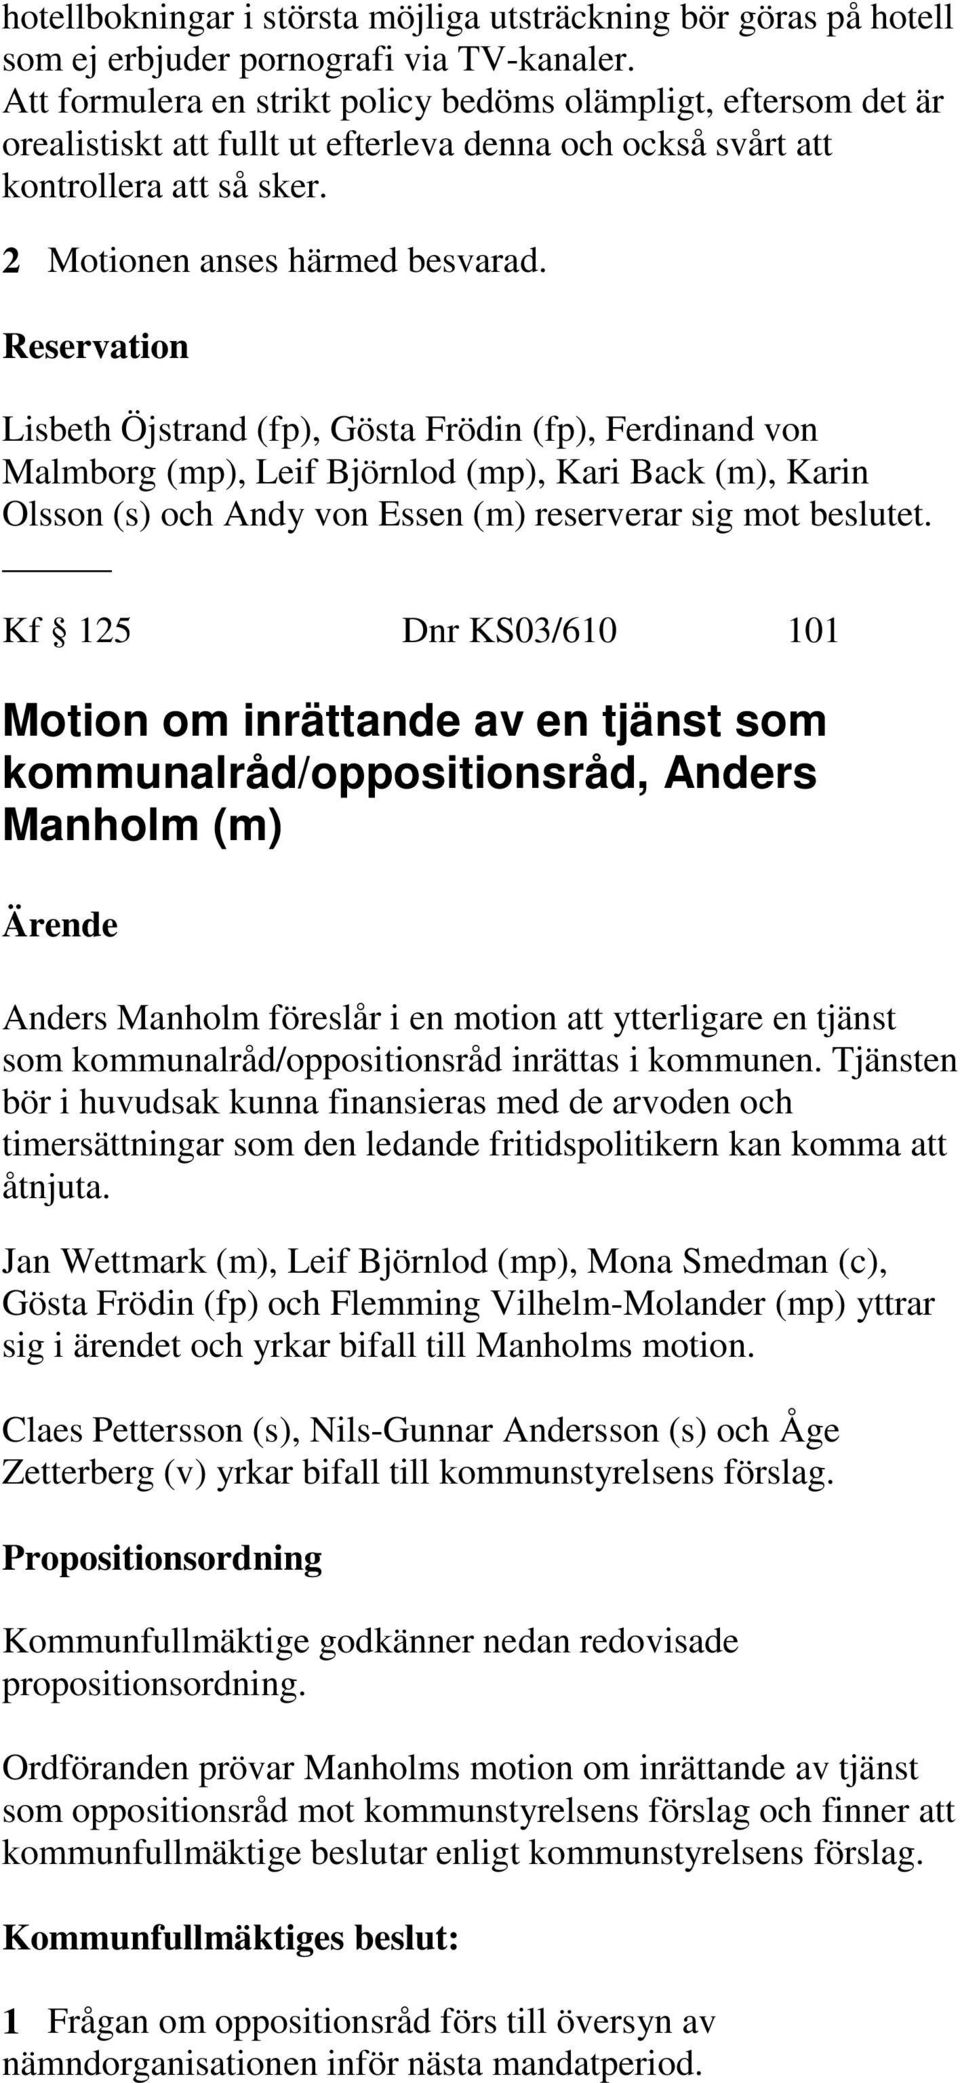 Reservation Lisbeth Öjstrand (fp), Gösta Frödin (fp), Ferdinand von Malmborg (mp), Leif Björnlod (mp), Kari Back (m), Karin Olsson (s) och Andy von Essen (m) reserverar sig mot beslutet.